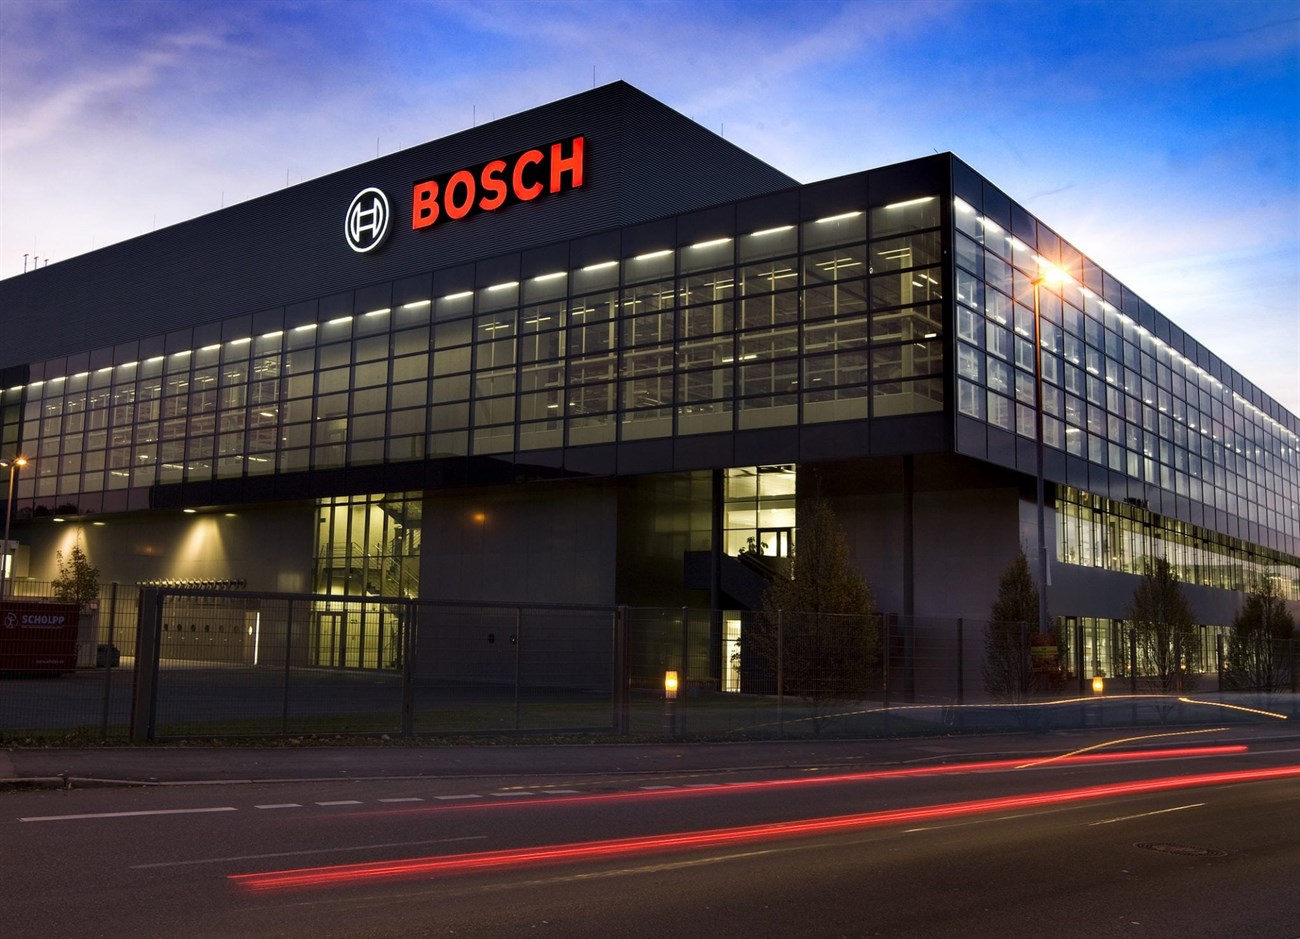 Máy mài Bosch của nước nào? Có tốt không?